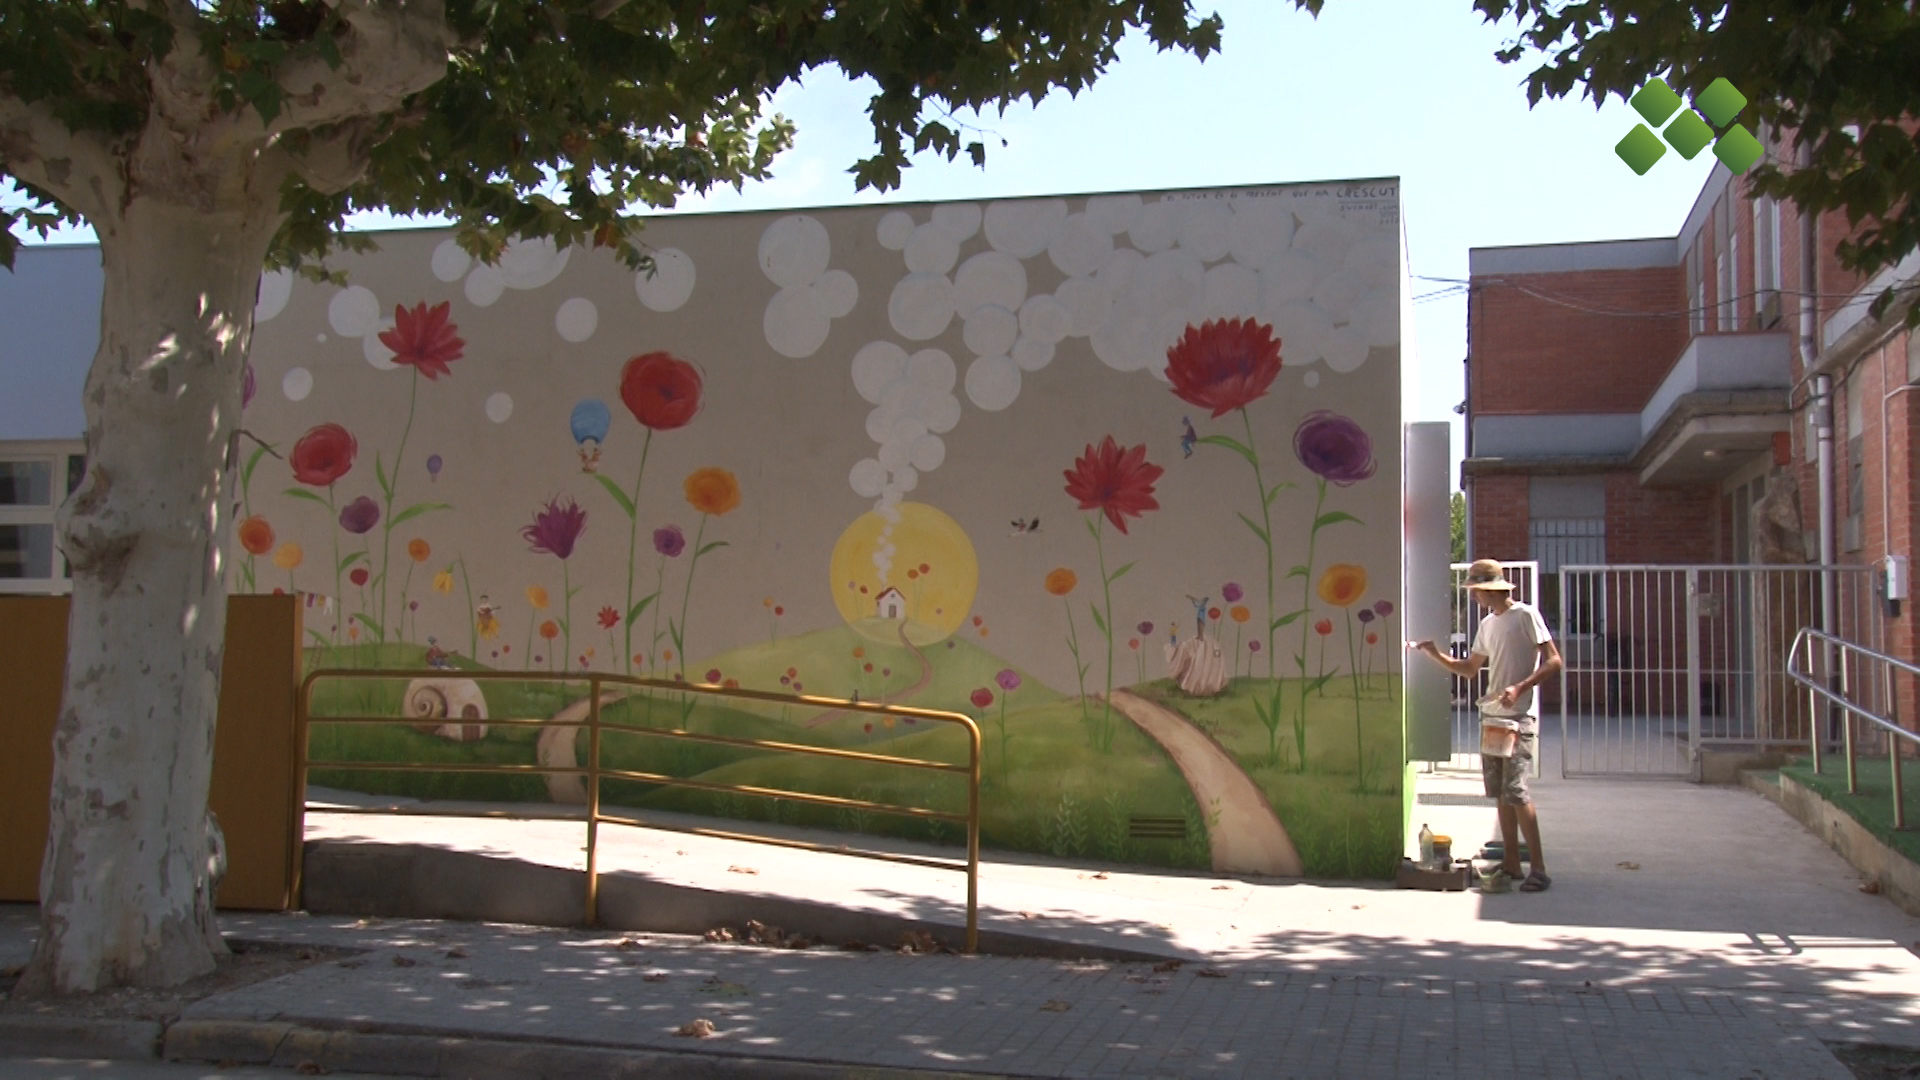 L’Ajuntament convoca un concurs de pintura mural per embellir el mur de L’Amistat del carrer Ciutat de Lleida